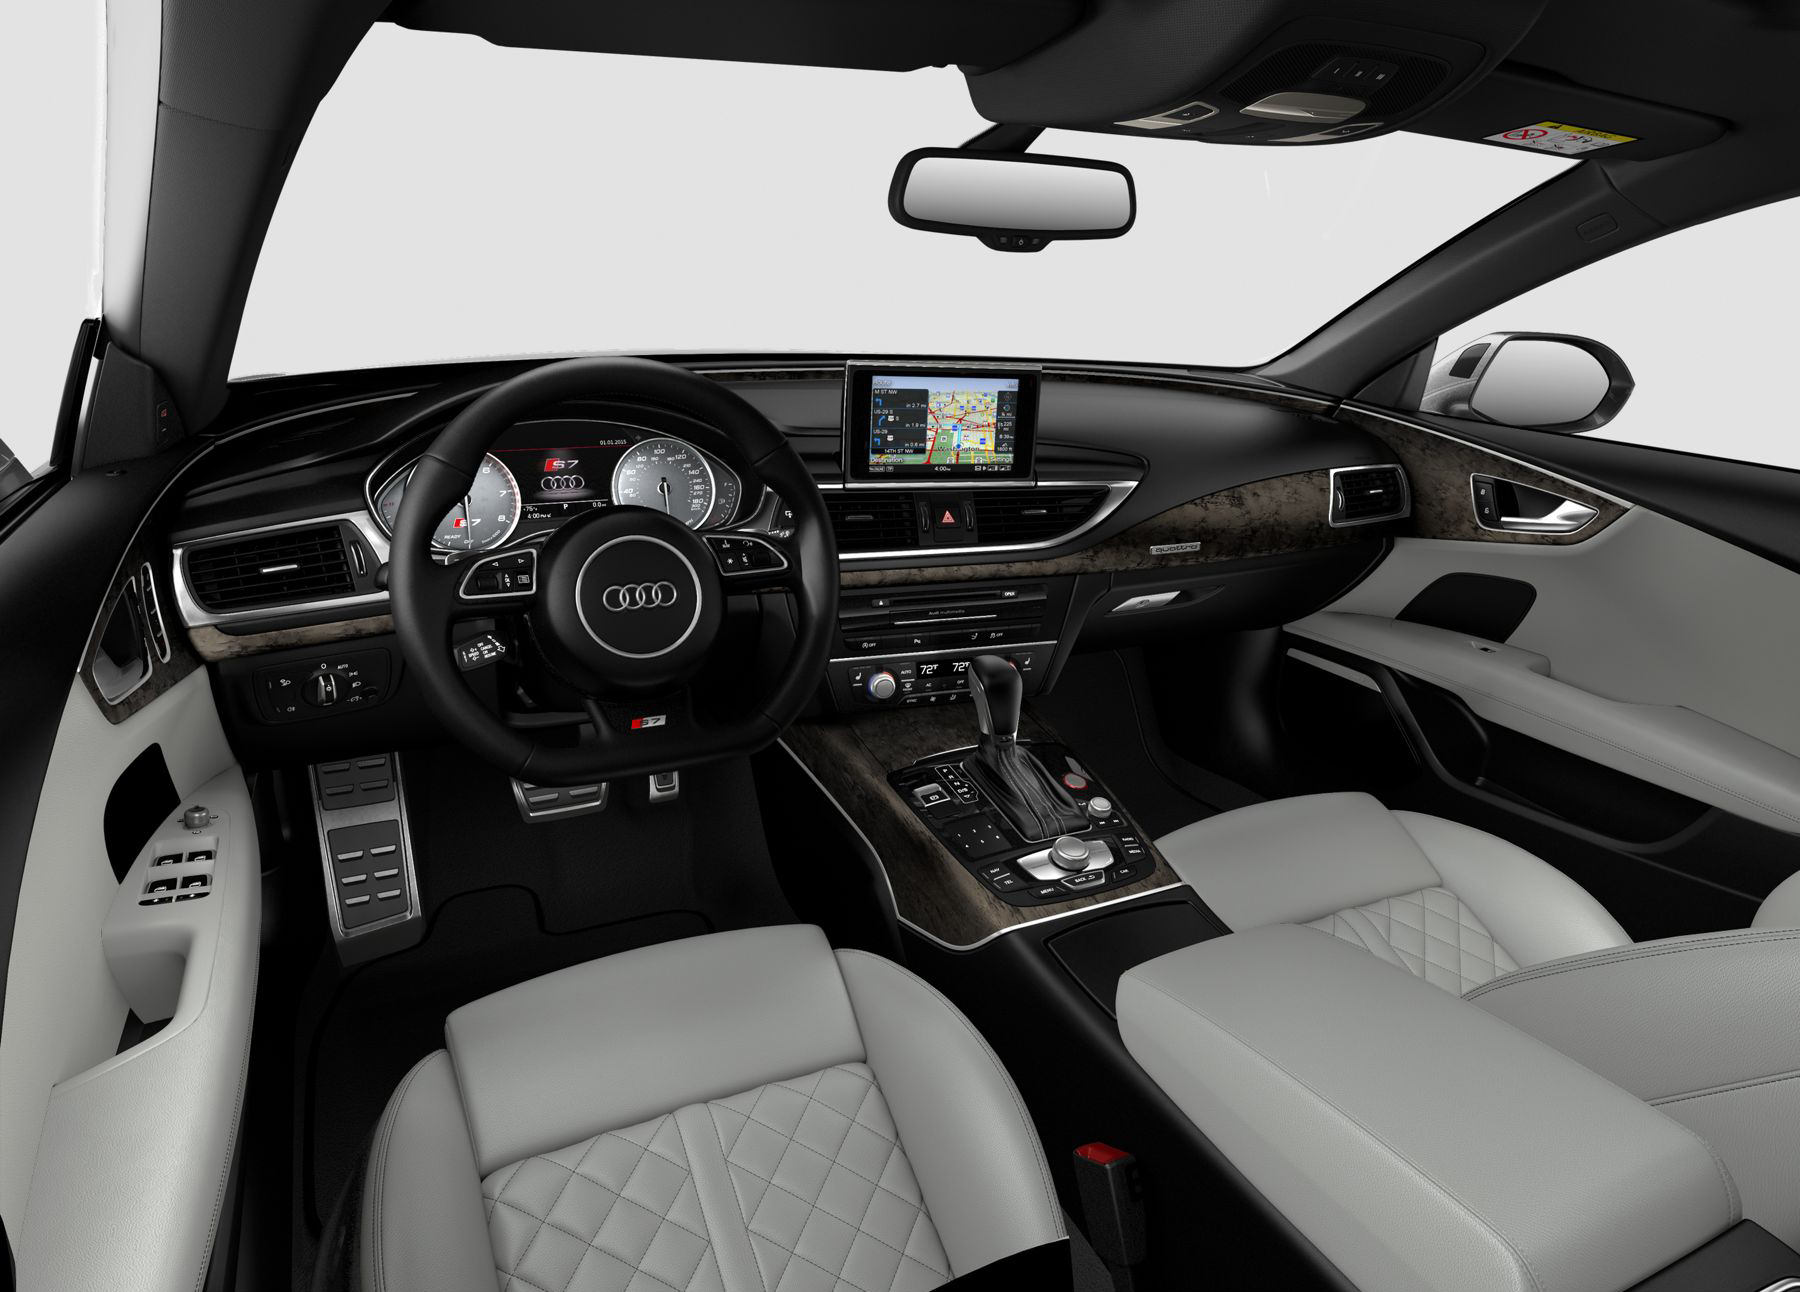 Audi S7 Premium Plus 2017 Interior Image Gallery Pictures